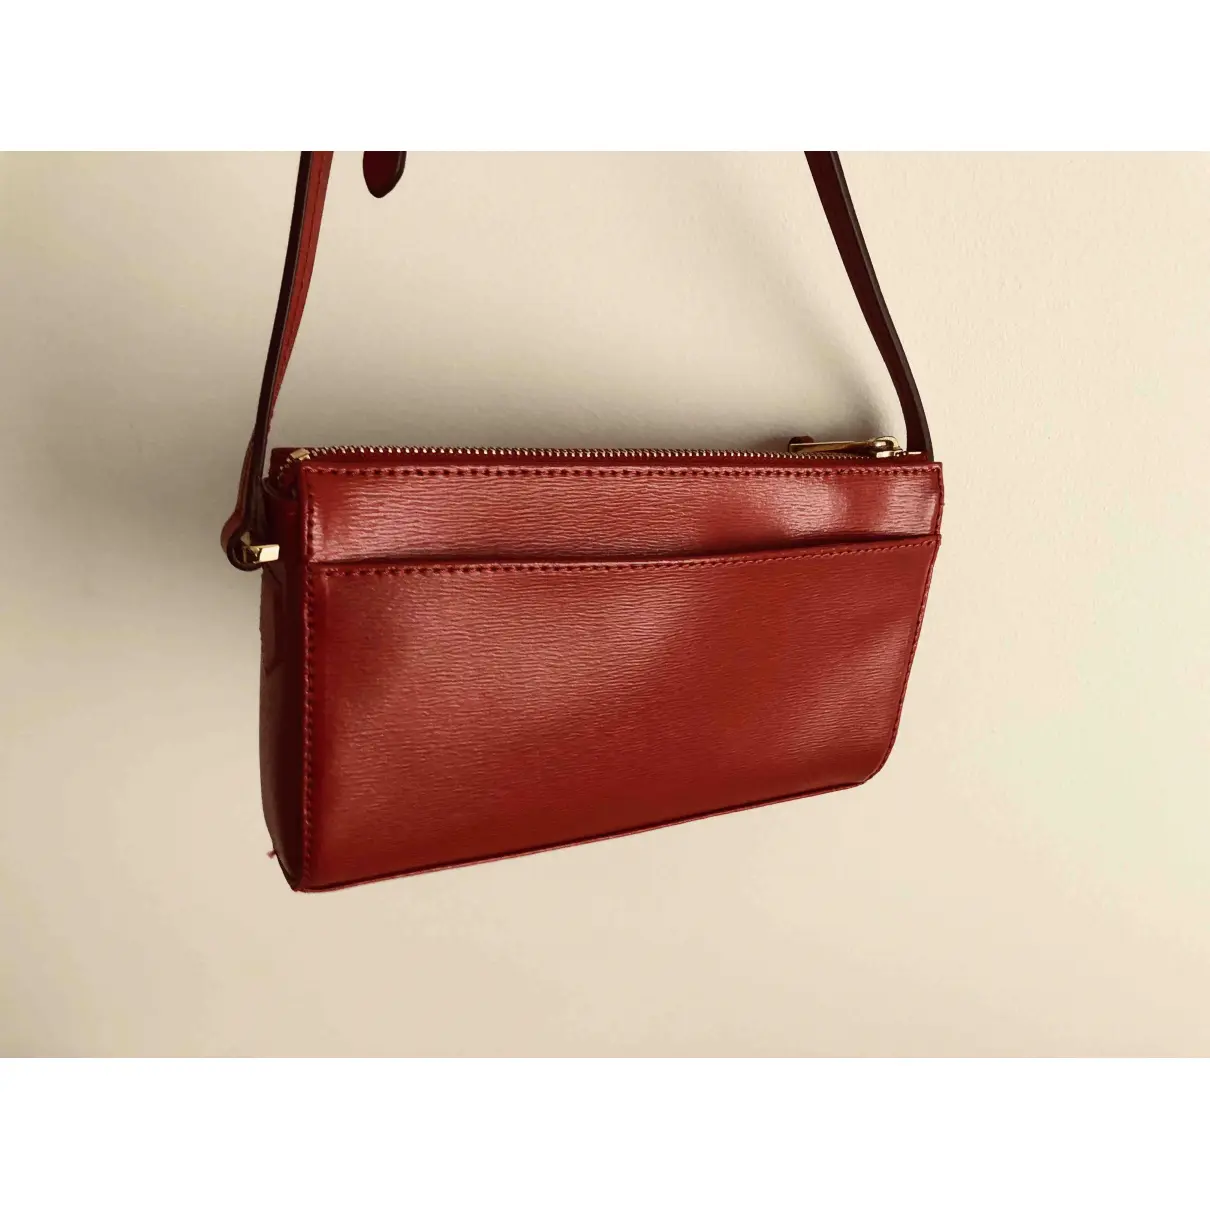 Buy Lauren Ralph Lauren Leather crossbody bag online